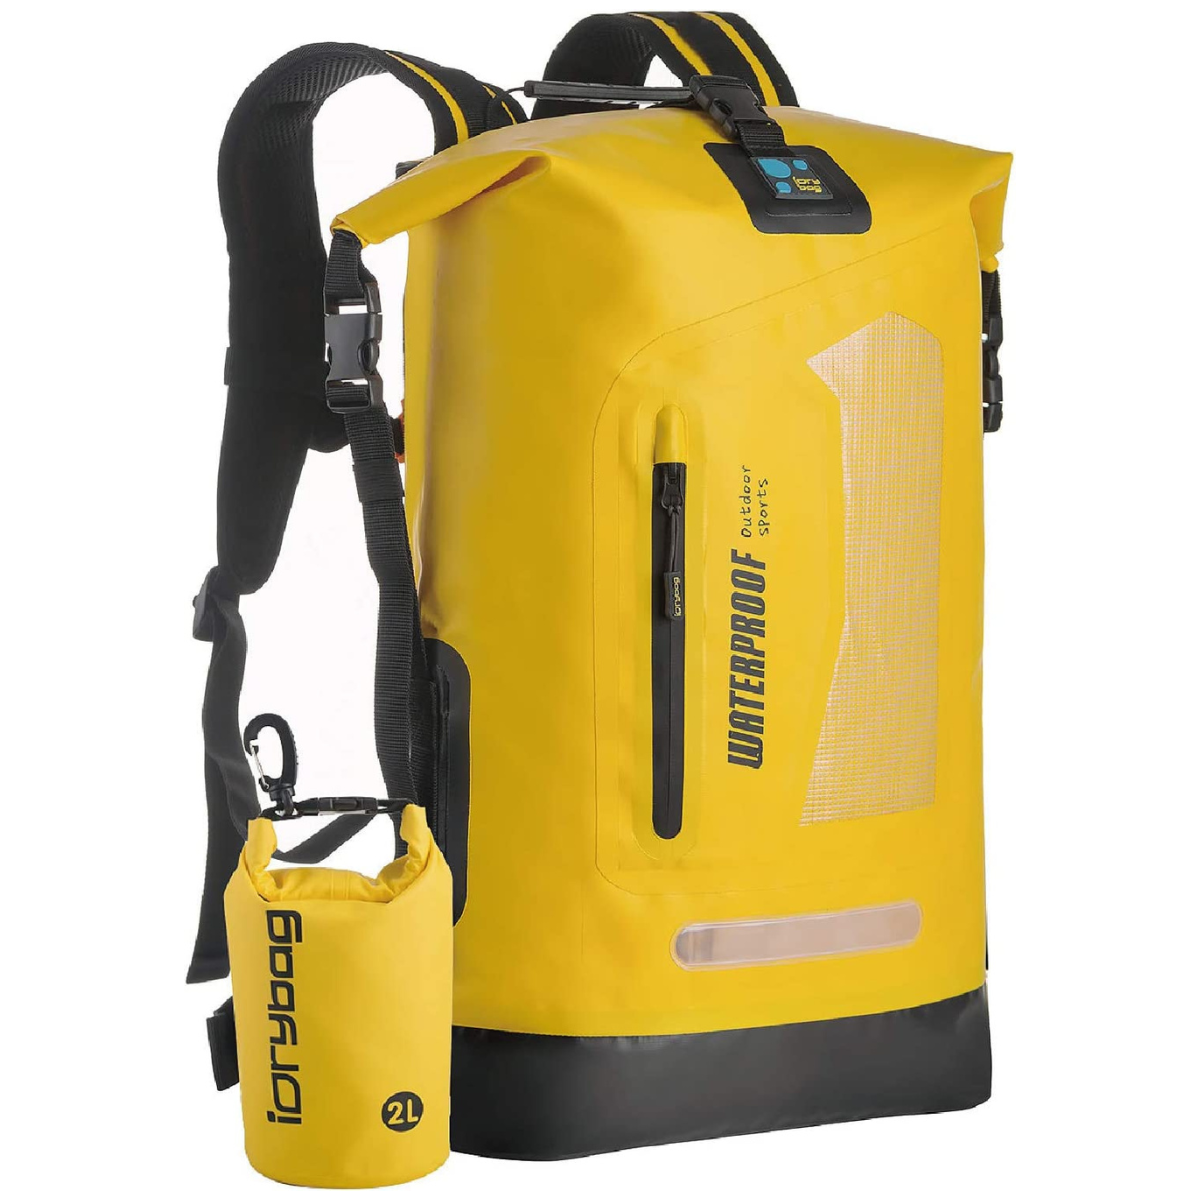 IDRYBAG Waterproof Dry Bag - Best Waterproof Dry Bag